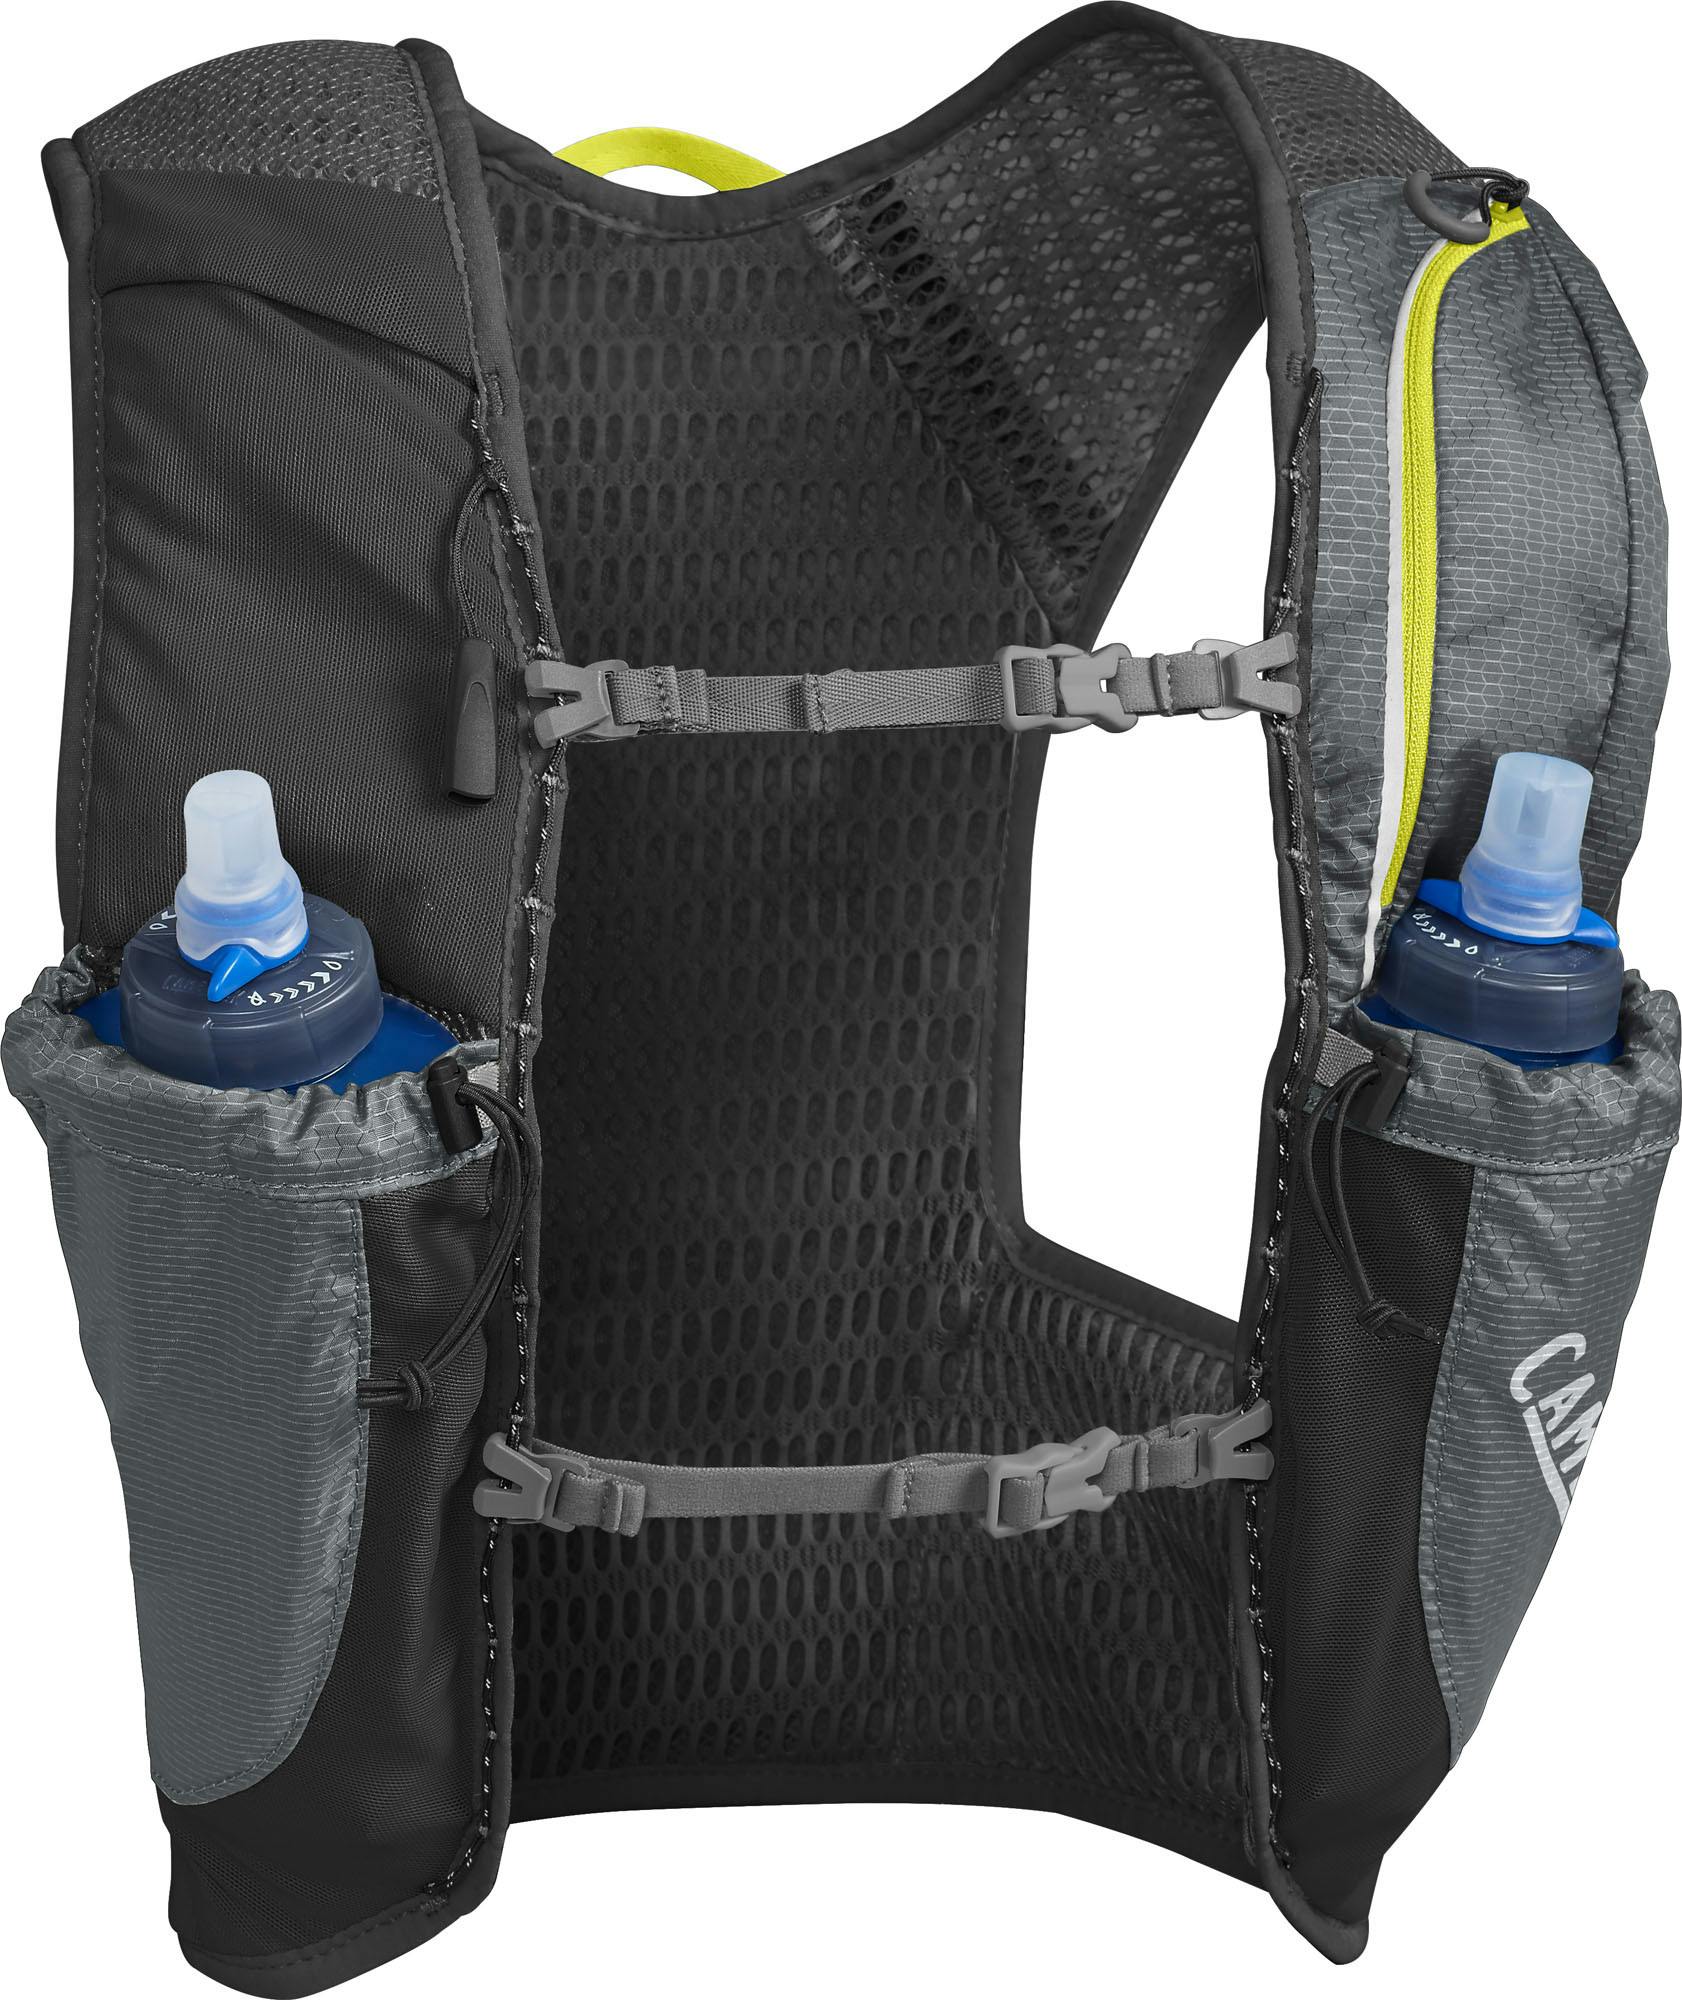 Camelbak Nano 3 Hydration Vest